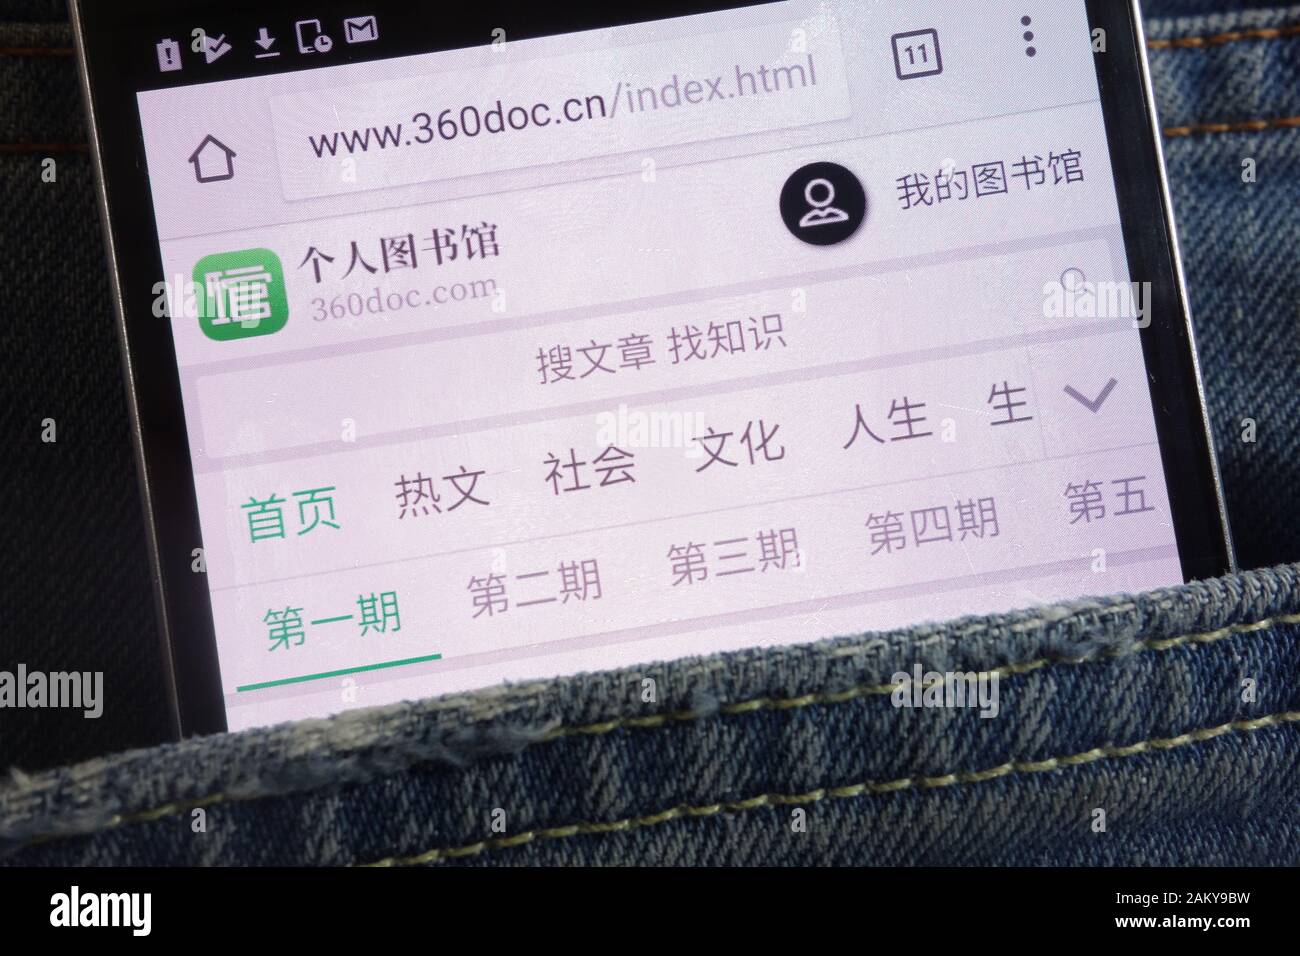 site web 360doc affiché sur smartphone caché dans la poche jeans Banque D'Images